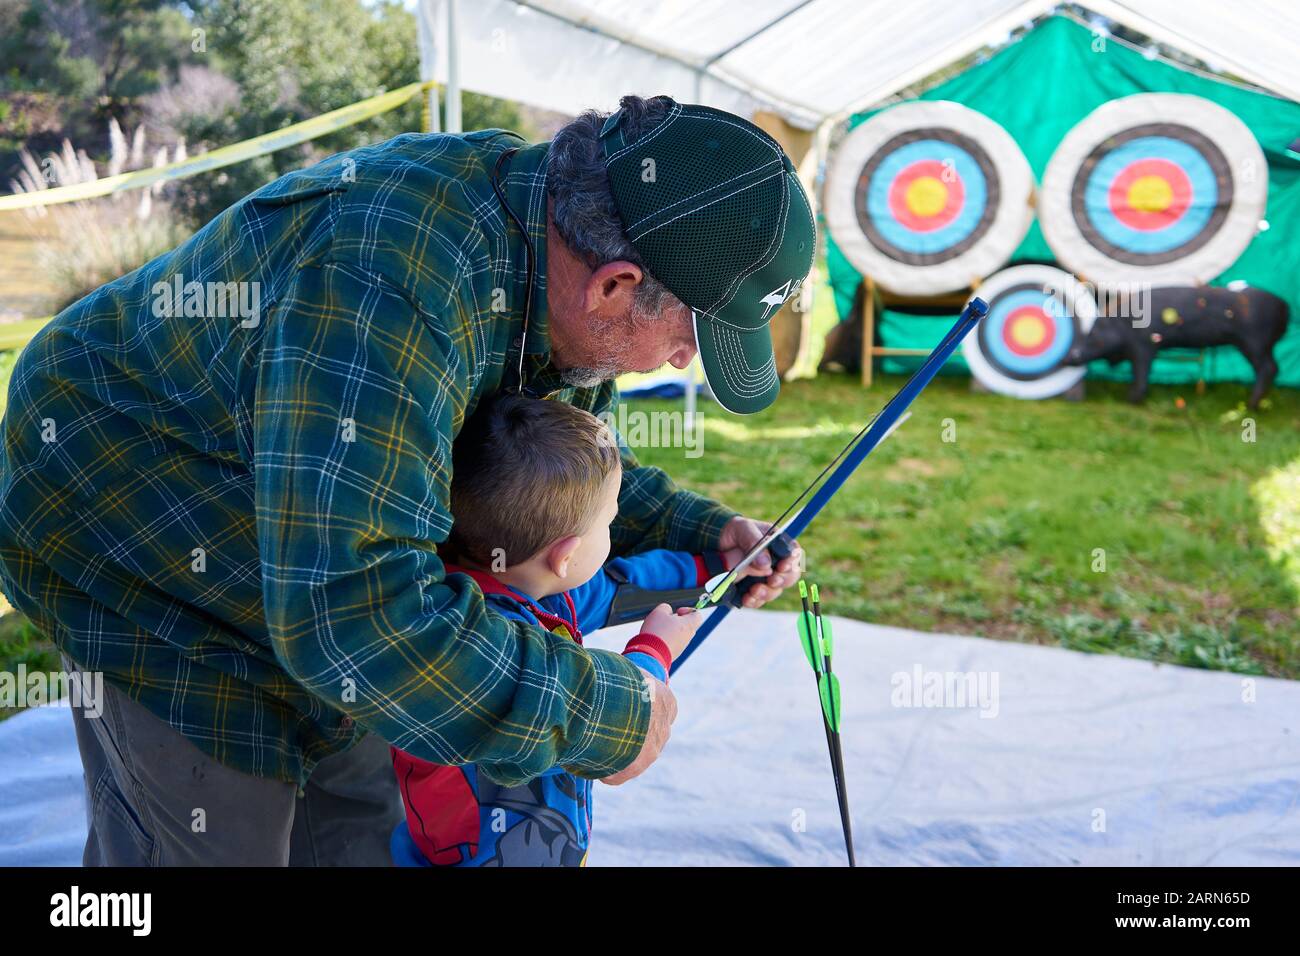 Ein Junge im Spiderman Outfit hält Bogen und Pfeil, als ein erwachsener Mann ihm beibringt, auf dem Steelhead Festival am Lake Sonoma California auf Ziele zu schießen. Stockfoto